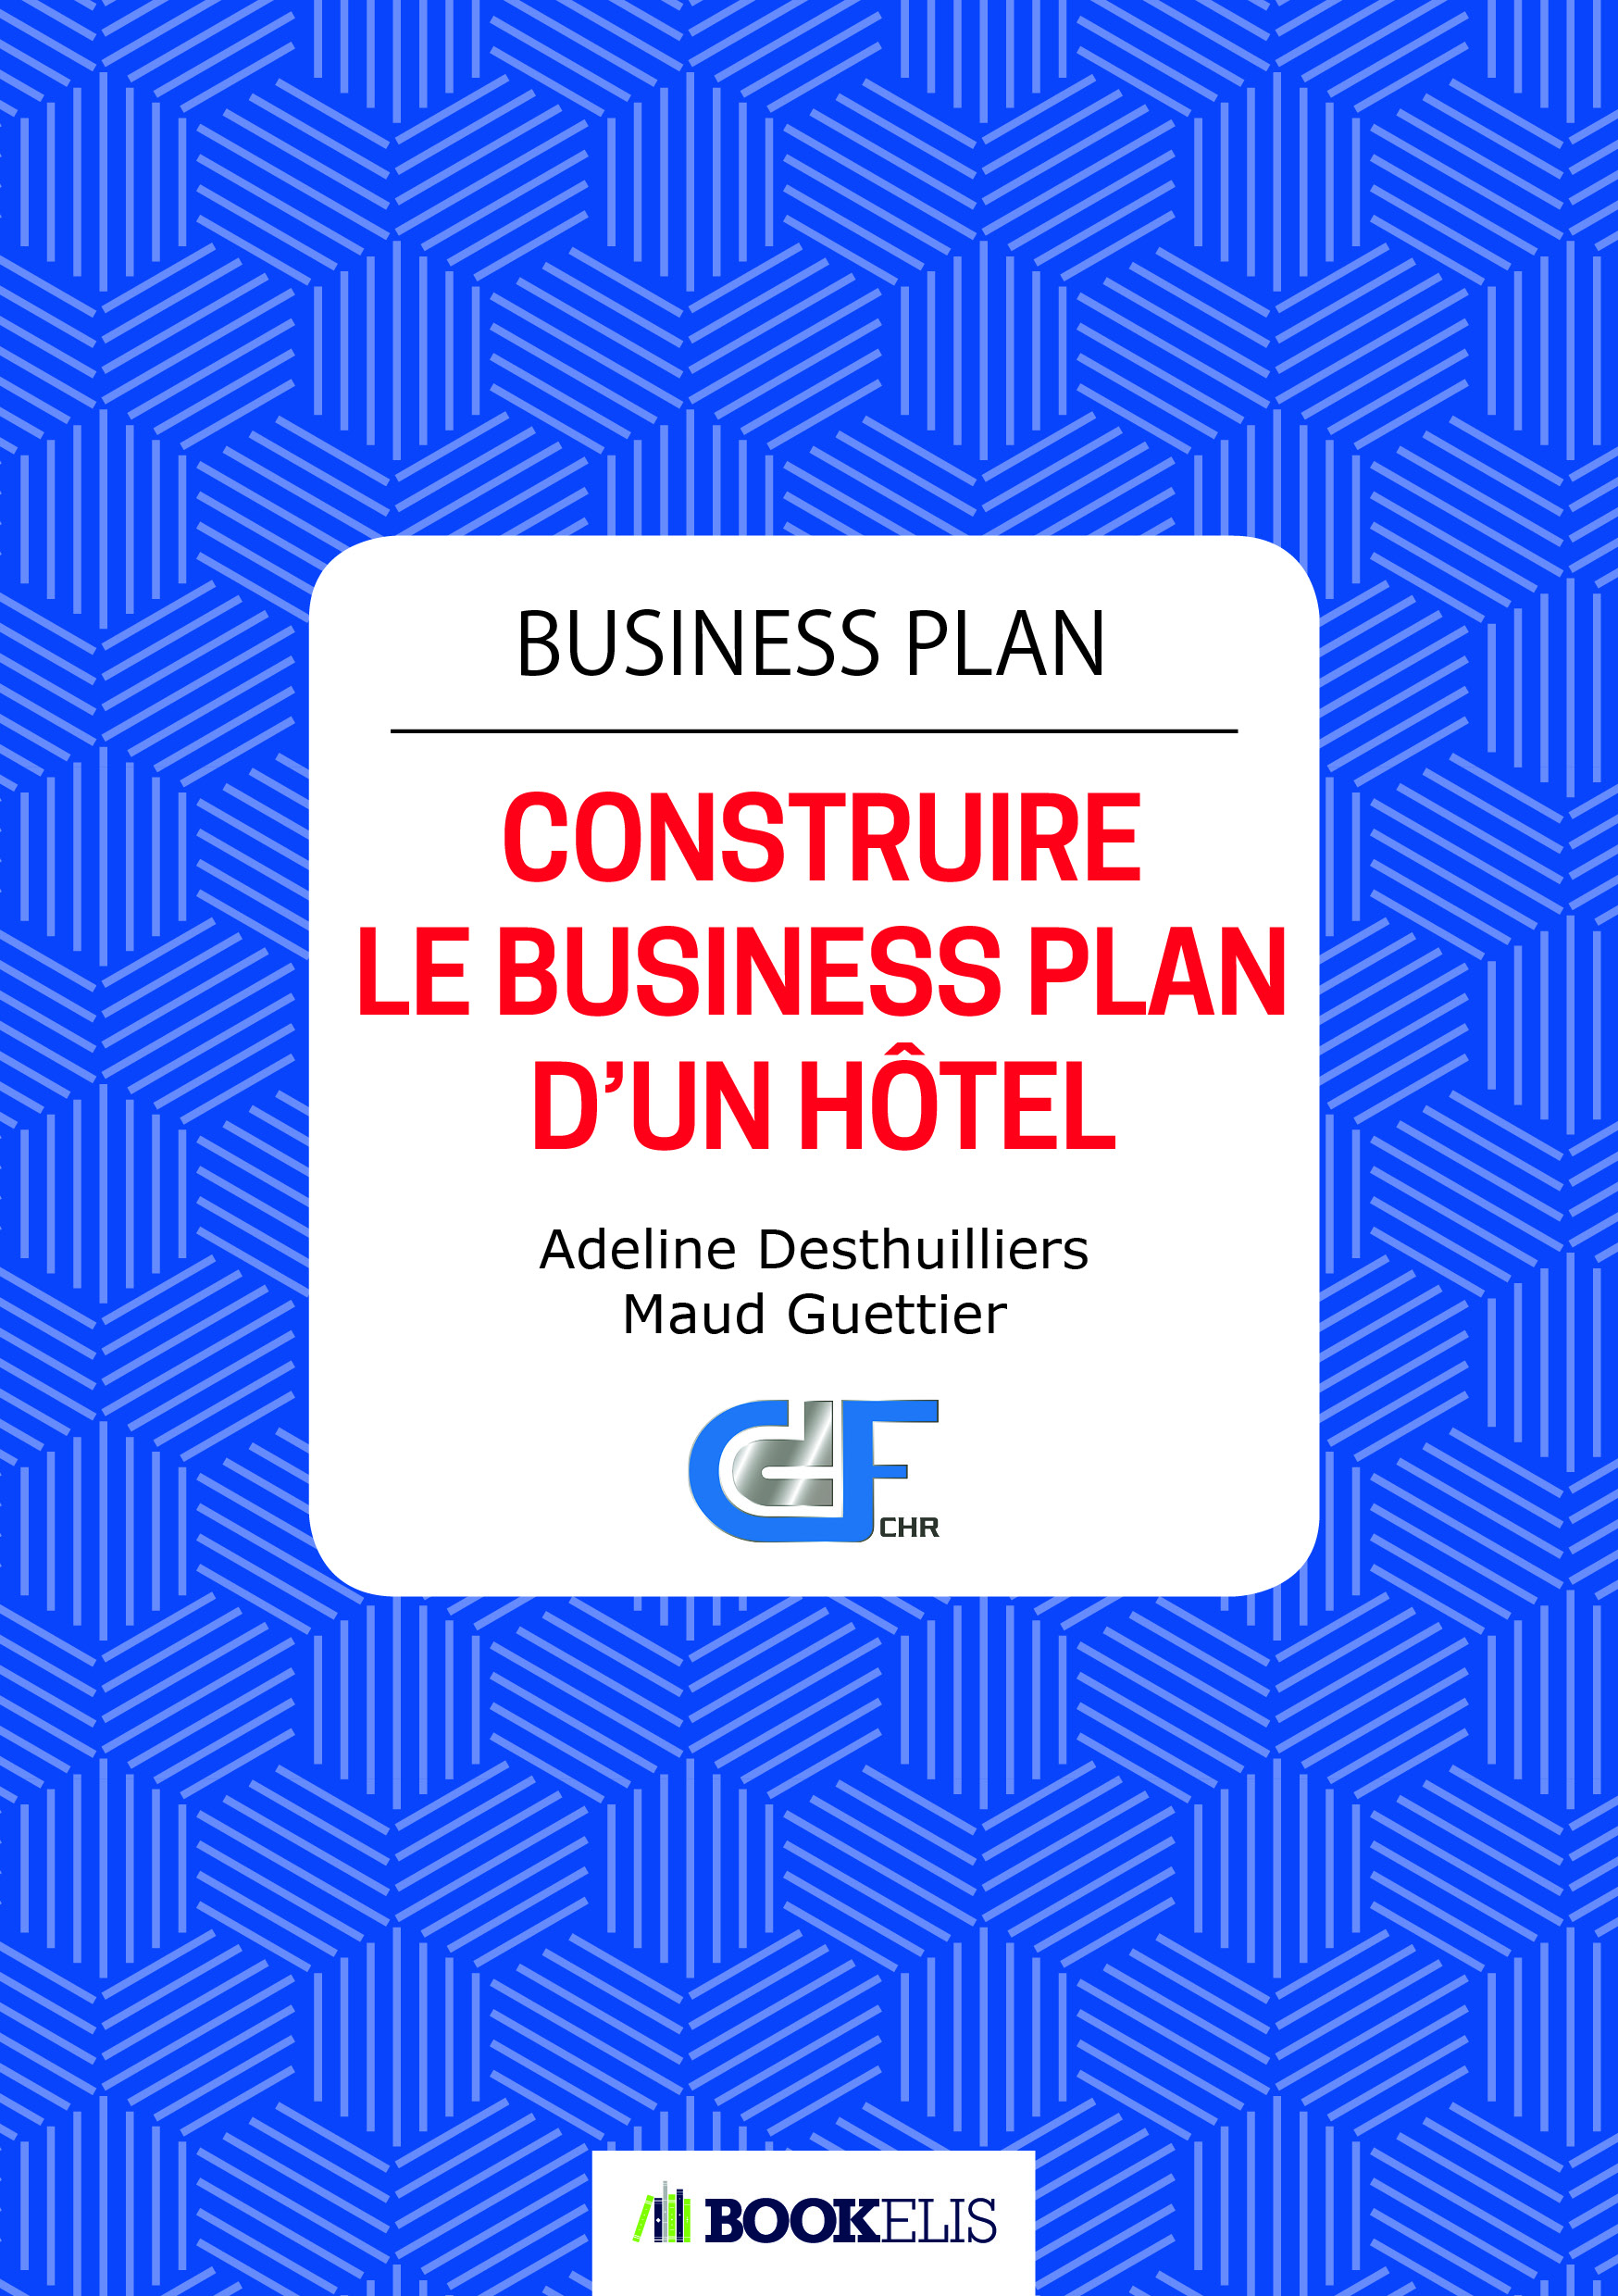 Commander le livre "Construire le Business plan d'un Hôtel"